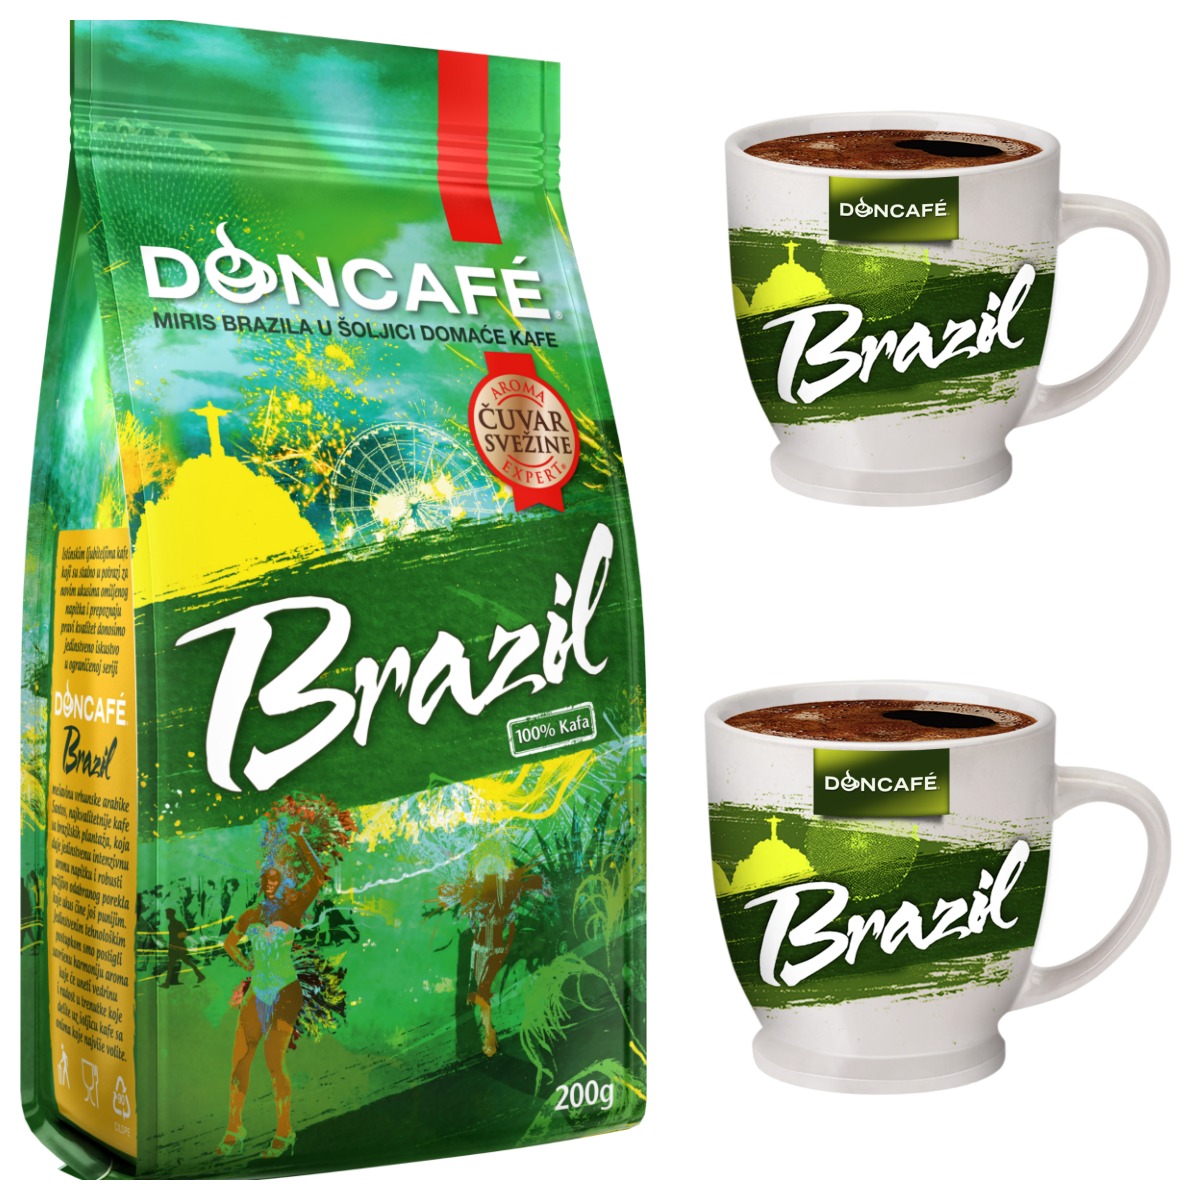 Doncafe Brazil